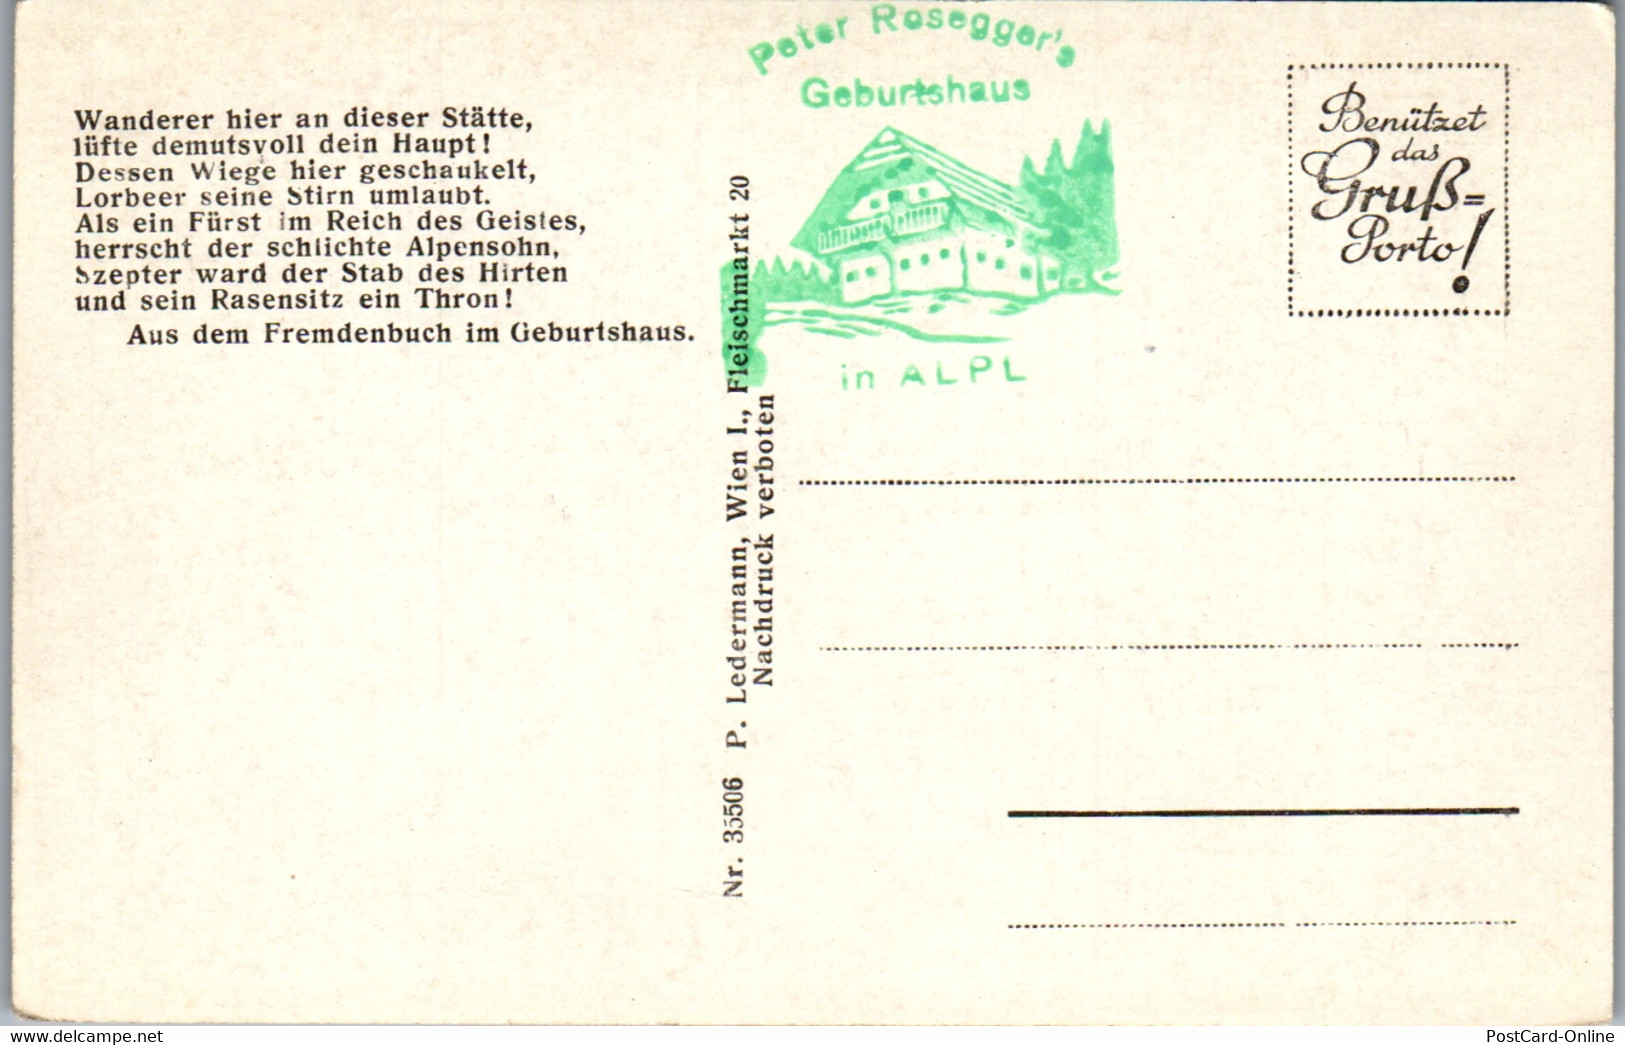 34619 - Steiermark - Alpl , Peter Rosegger's Geburtshaus Gegen Hochwechsel - Nicht Gelaufen - Krieglach